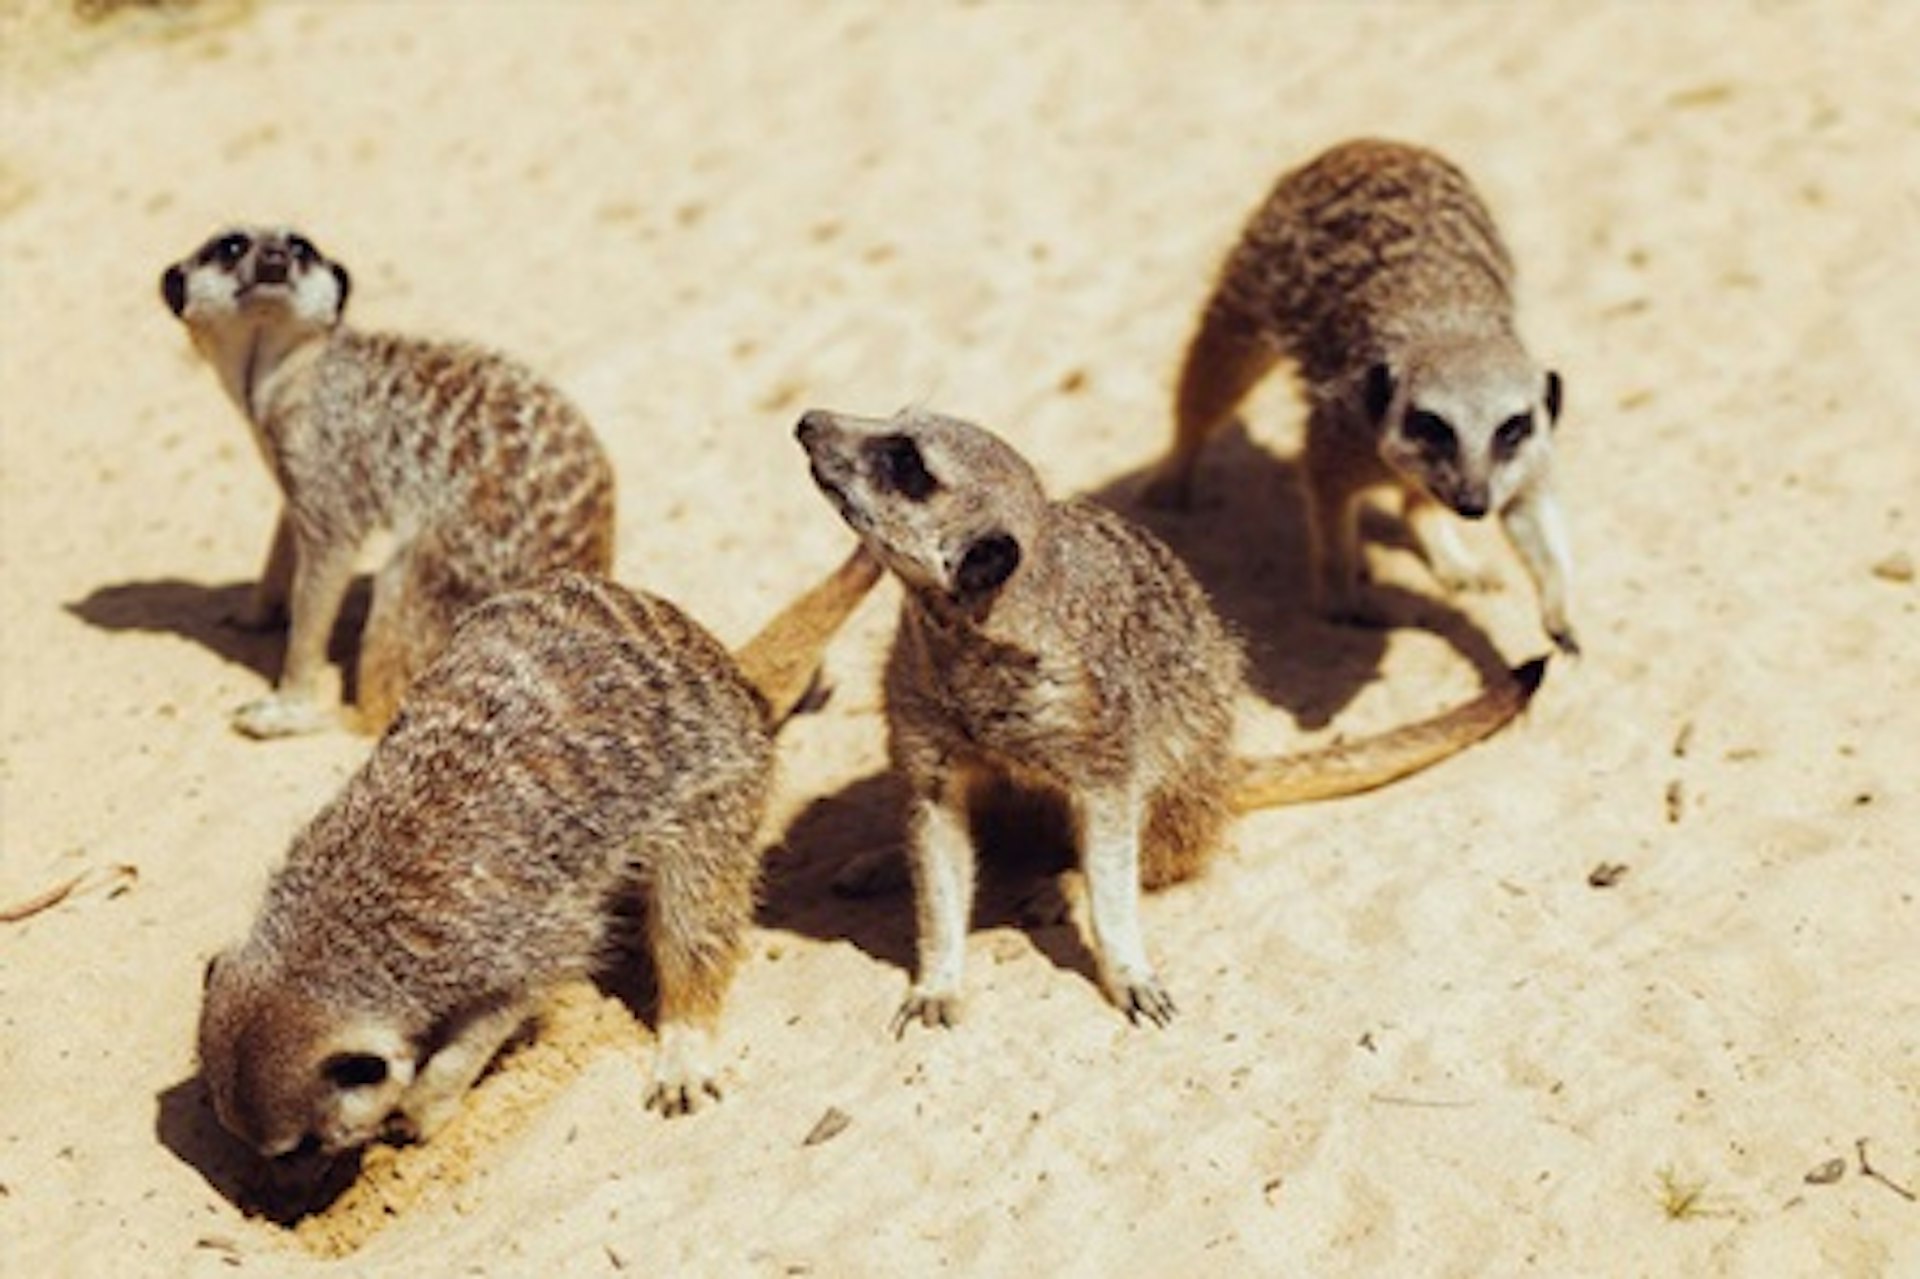 Meet the Meerkats for One 2